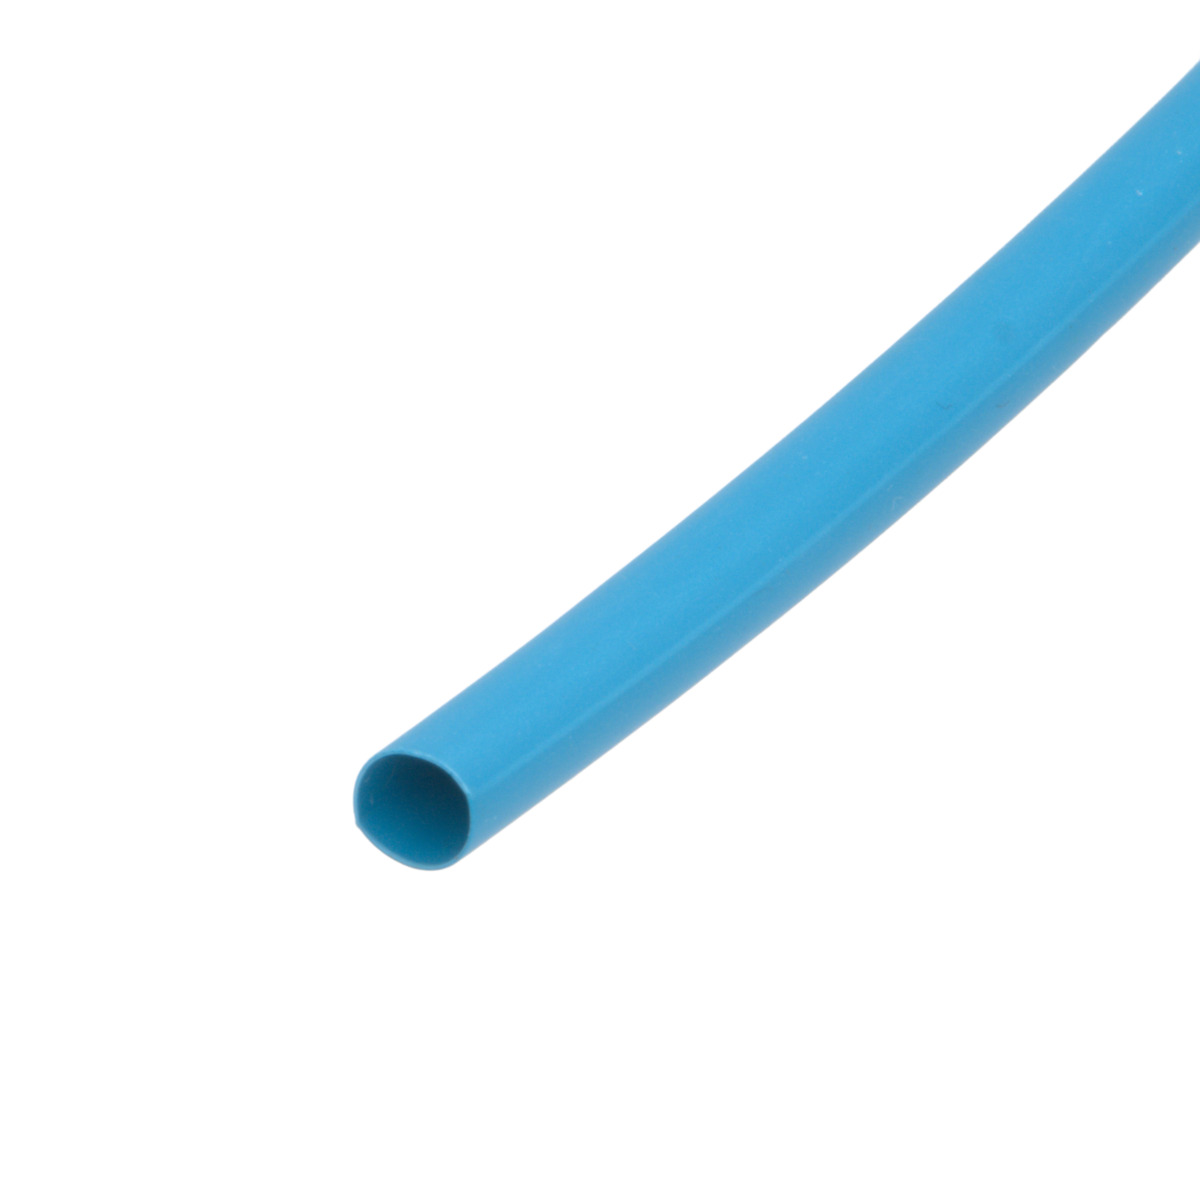 Pack de corte [1.2m] de tubo termorretráctil 2:1 Ø9.5mm azul – Poliolefina libre de halógeno e ignífugo [x25]